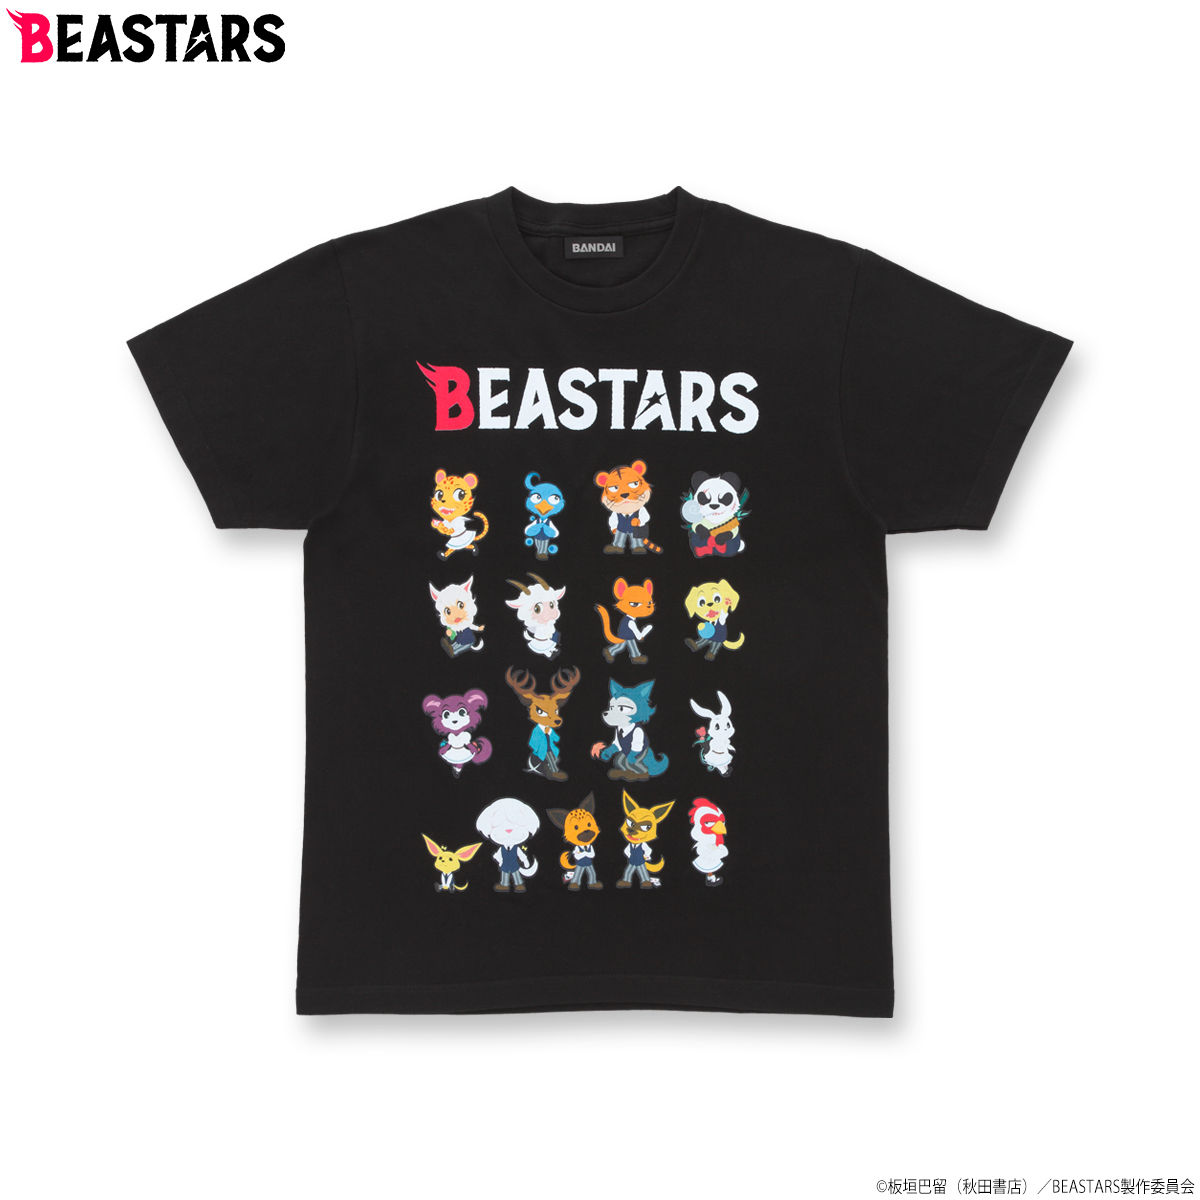 Beastars Sdキャラクター Tシャツ フィギュア プラモデル プラキット バンダイナムコグループ公式通販サイト